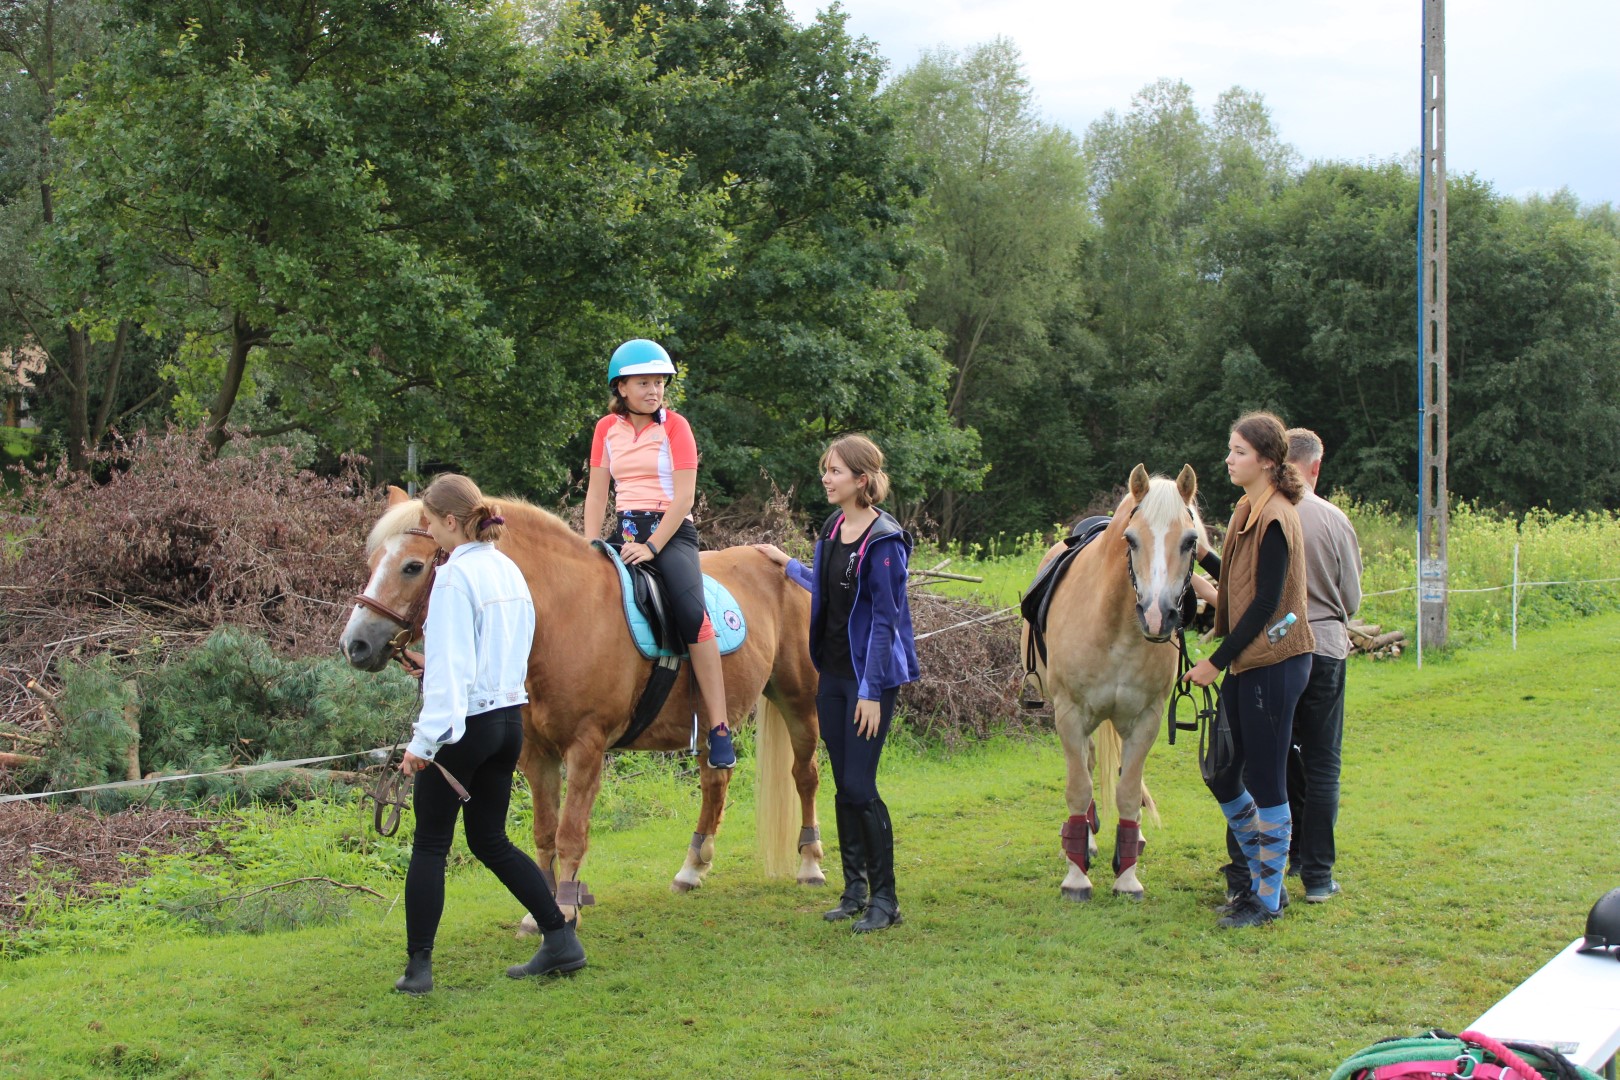 Na zdjęciu znajdują się instruktorzy prowadzący konie, na których znajdują się dzieci.